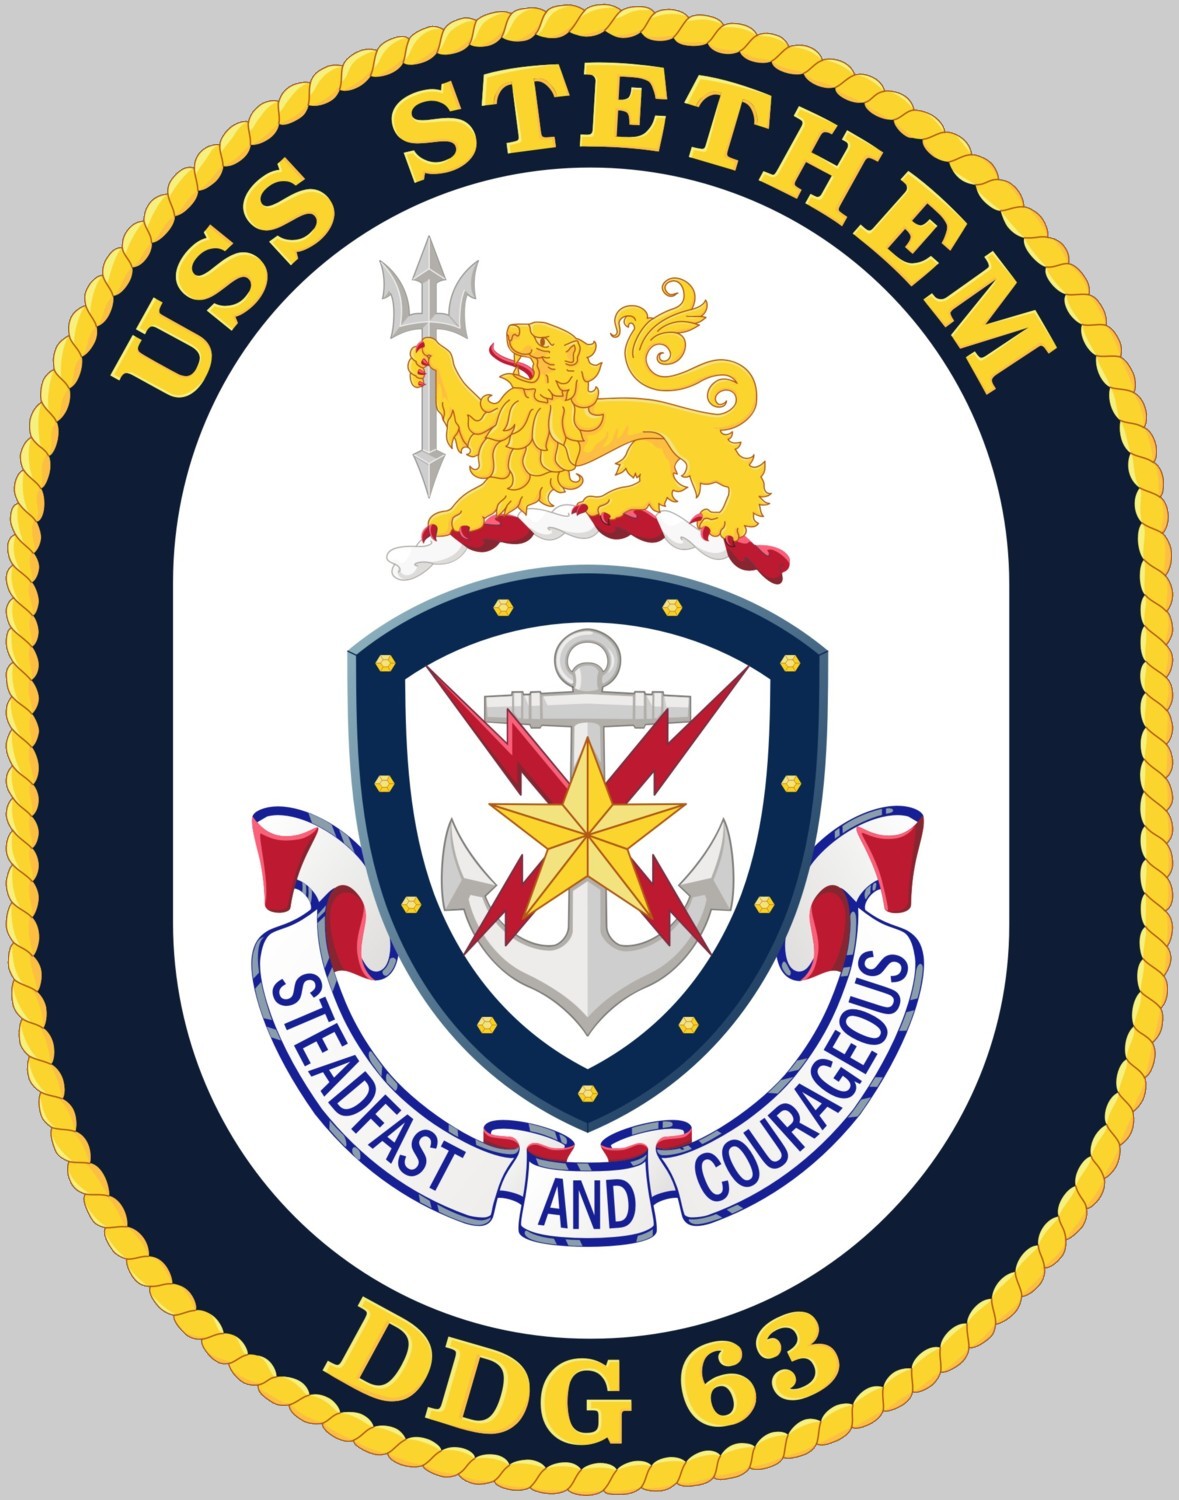 ddg-63 uss stethem insignia crest patch badge destroyer us navy 02x